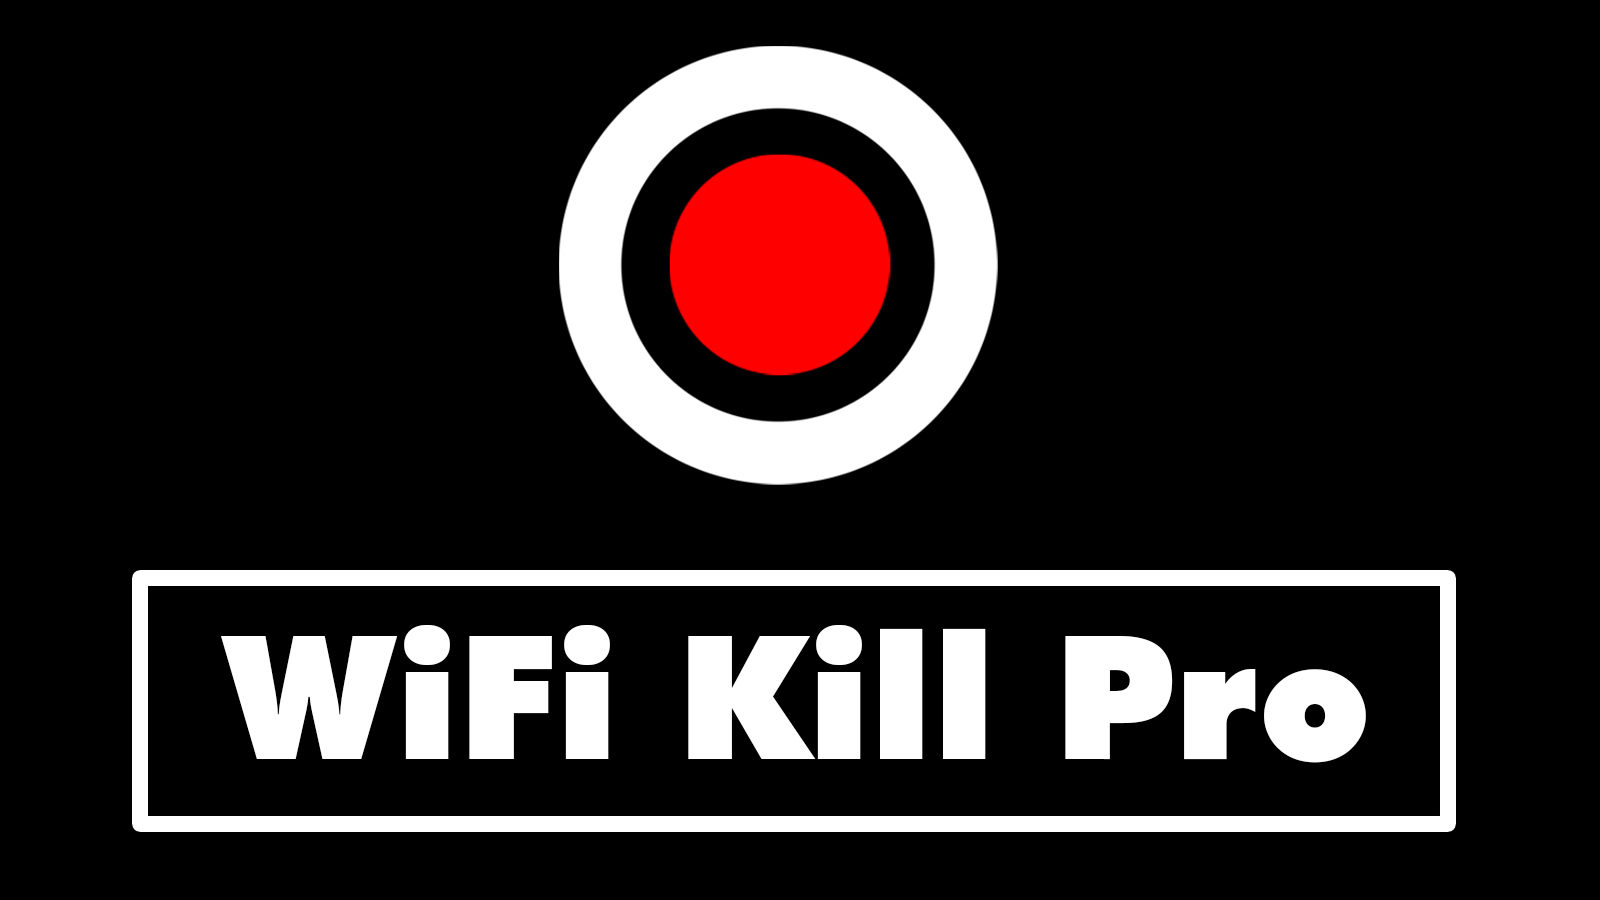 WiFi Kill Pro